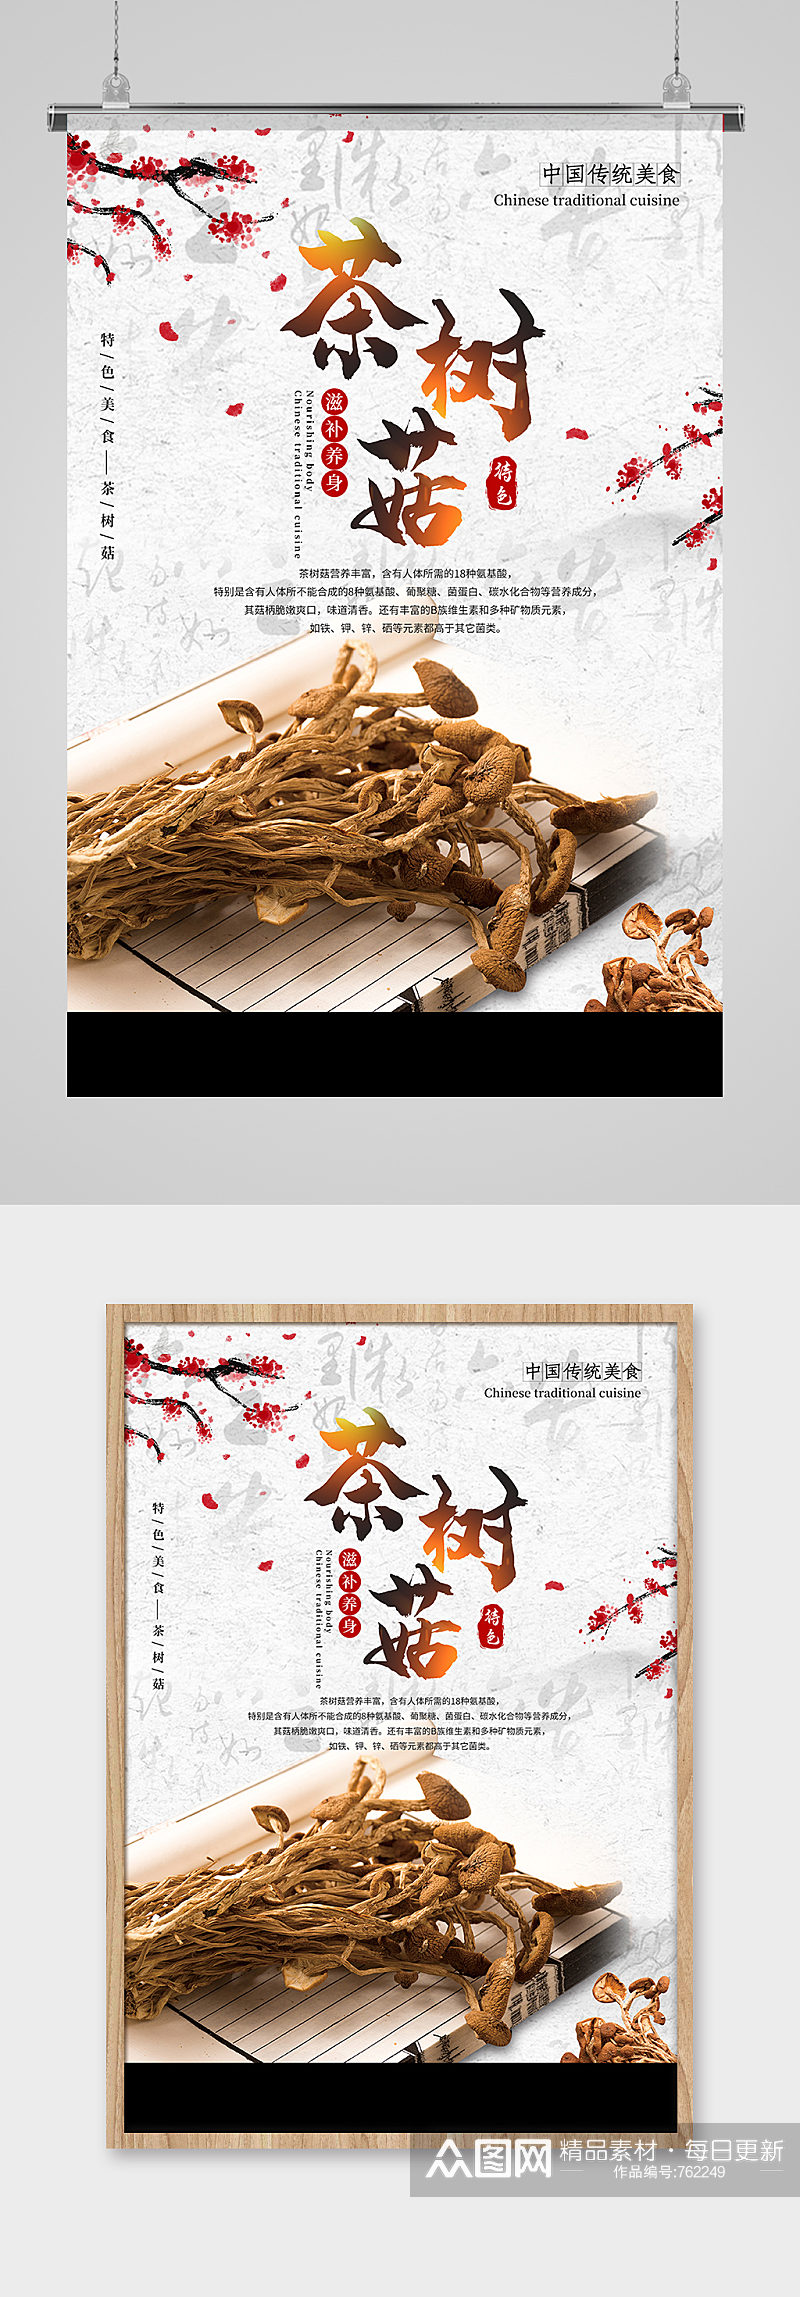 水墨风茶树菇养身中国传统美食宣传海报素材